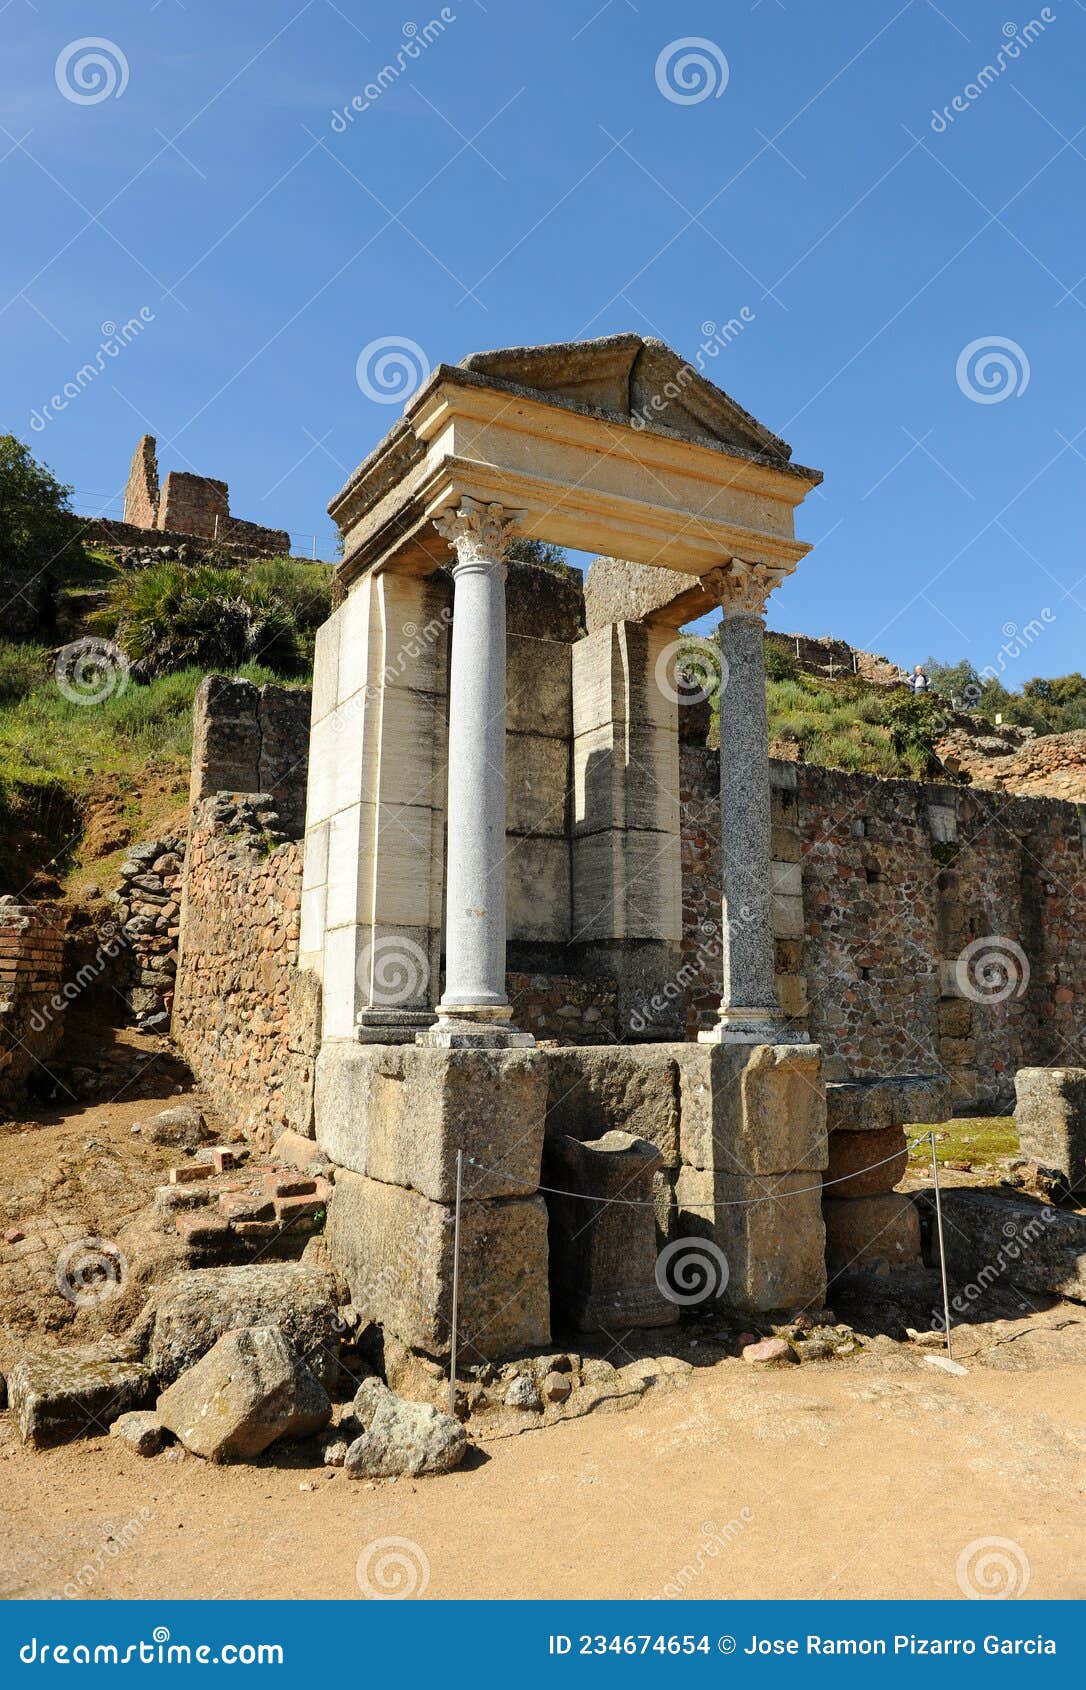 templo del dios mercurio en munigua mulva, provincia de sevilla, espaÃÂ±a